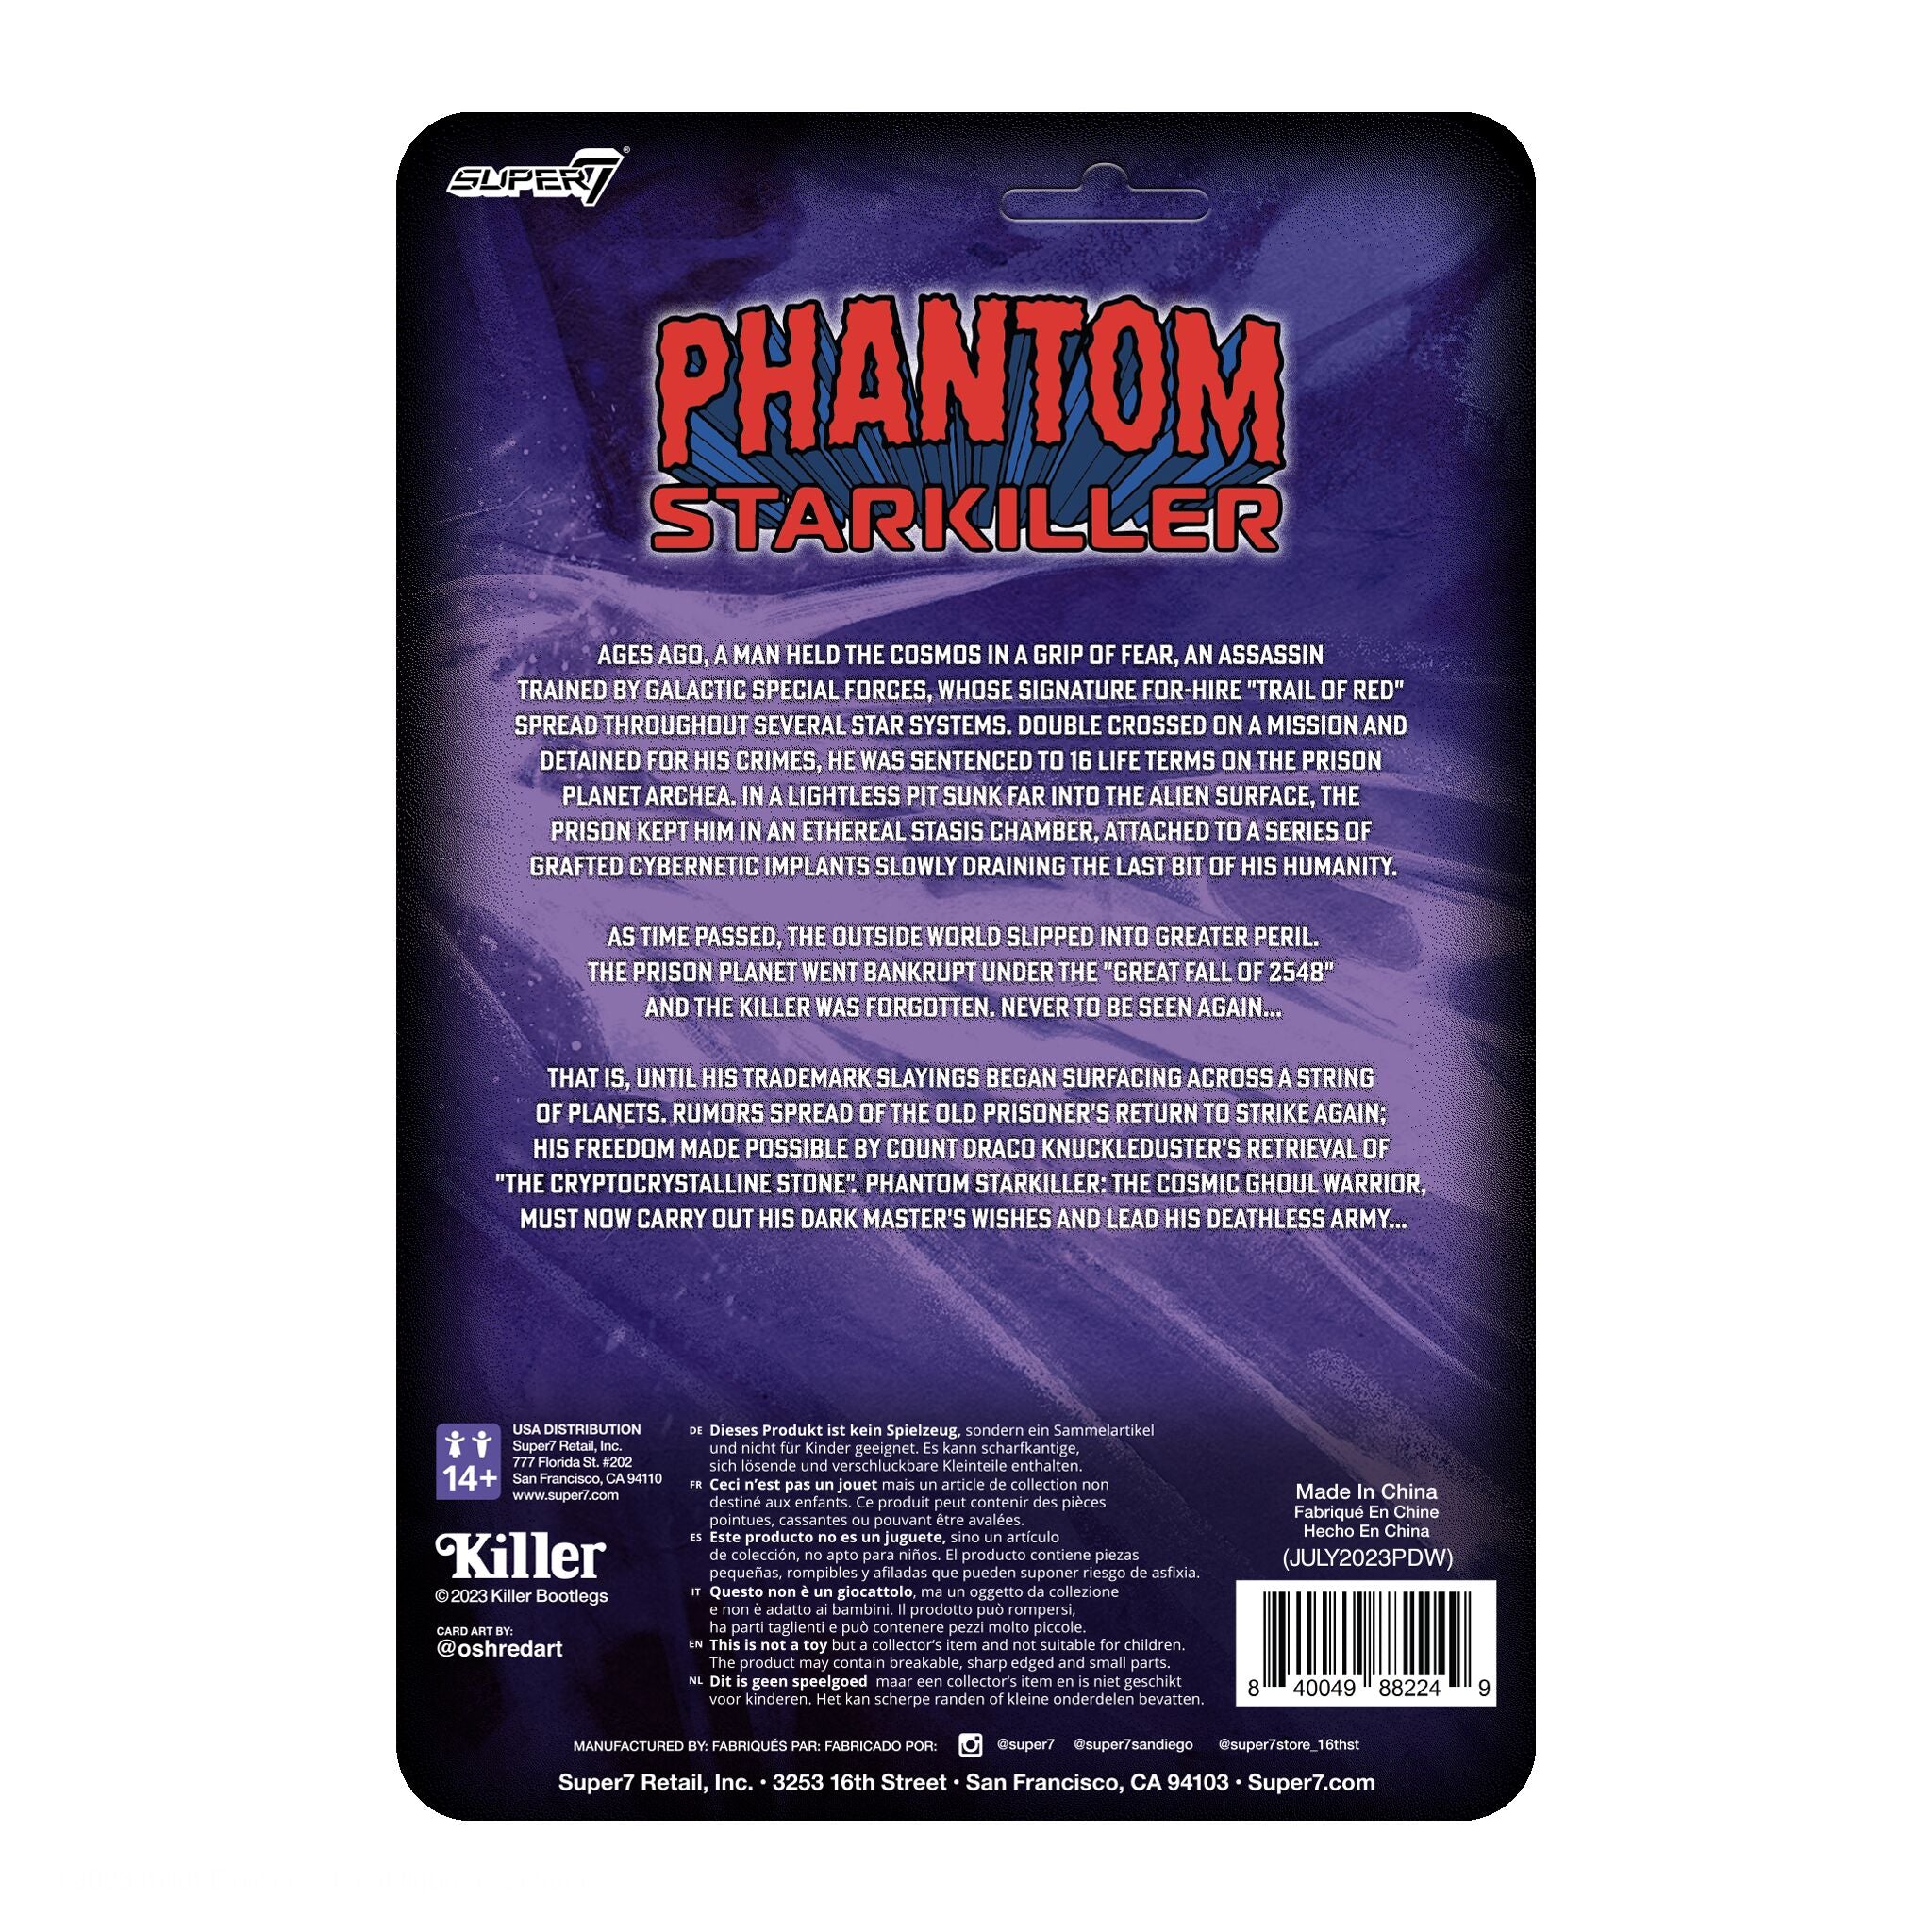 Phantom Starkiller ReAction Figures - Ghost of Phantom Starkiller